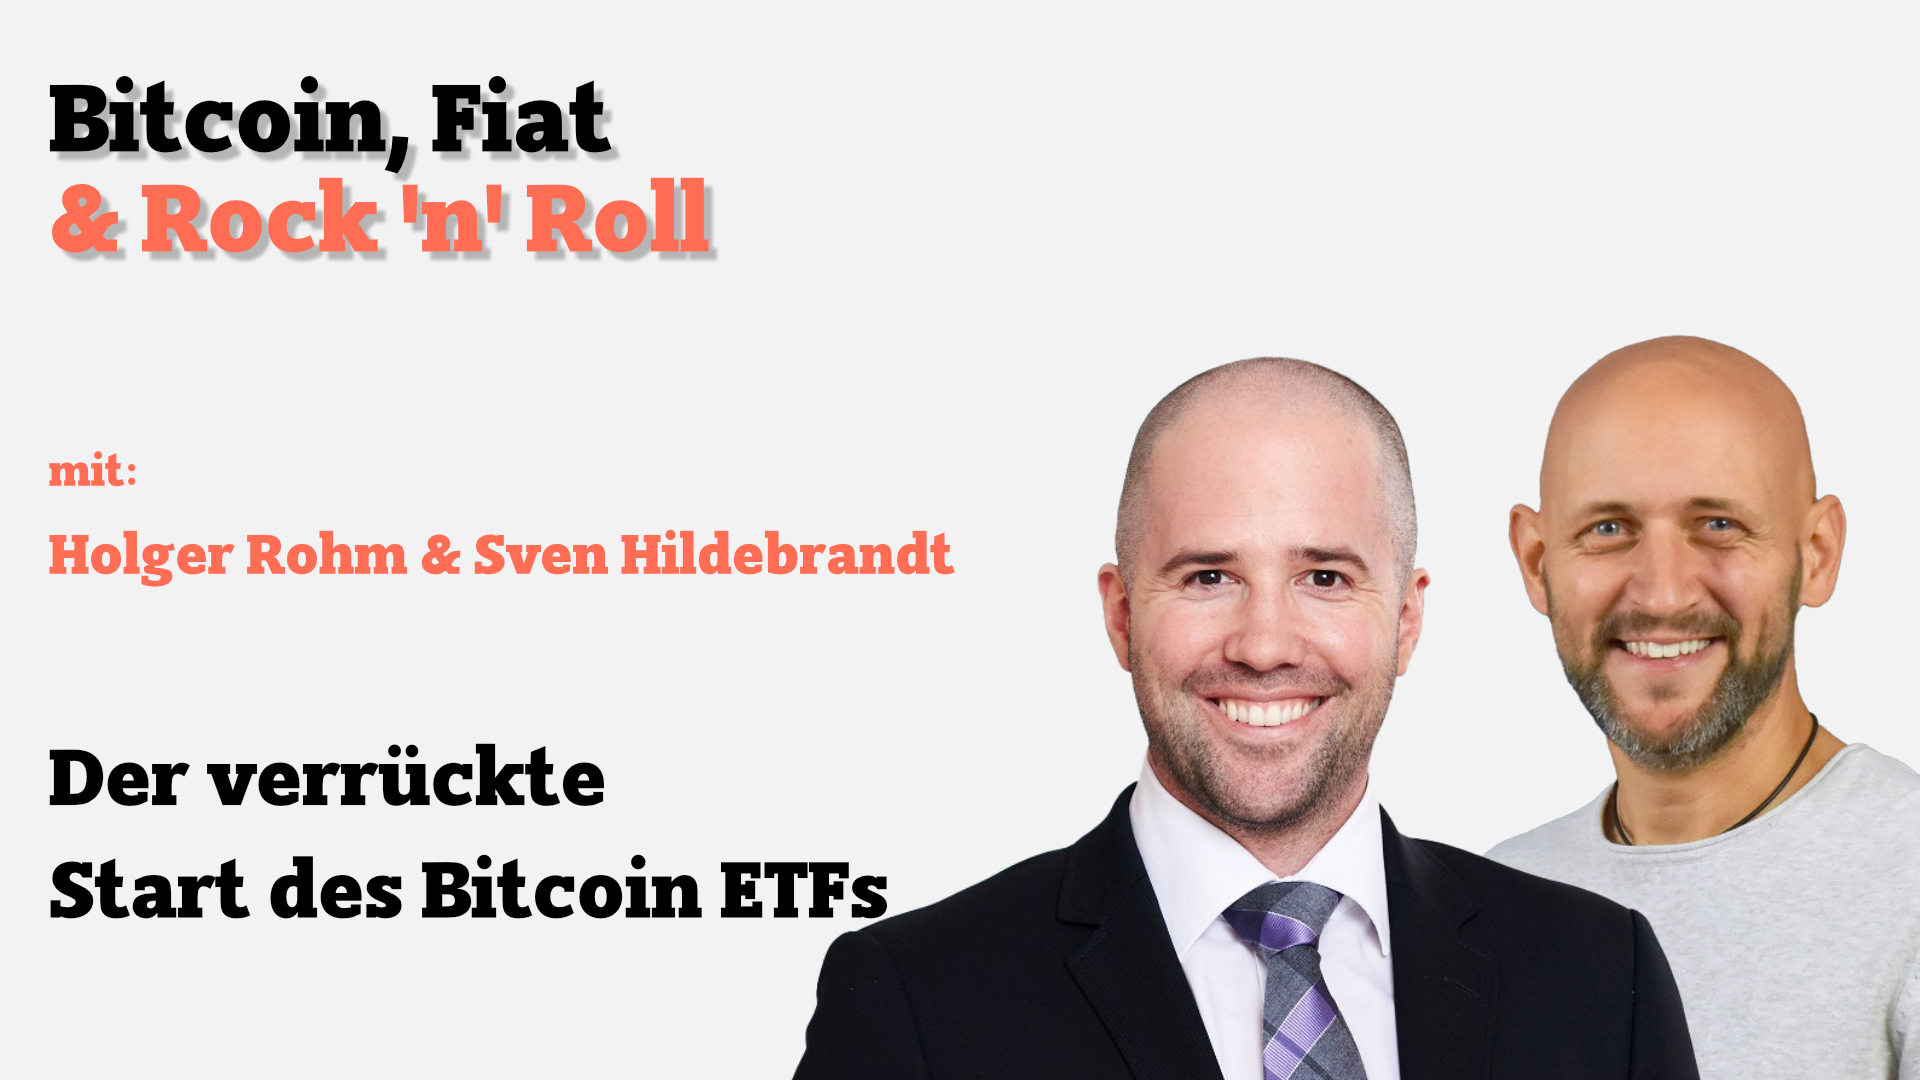 Holger Rohms und Seven Hildebrandt über den verrückten Start des Bitcoin ETFs